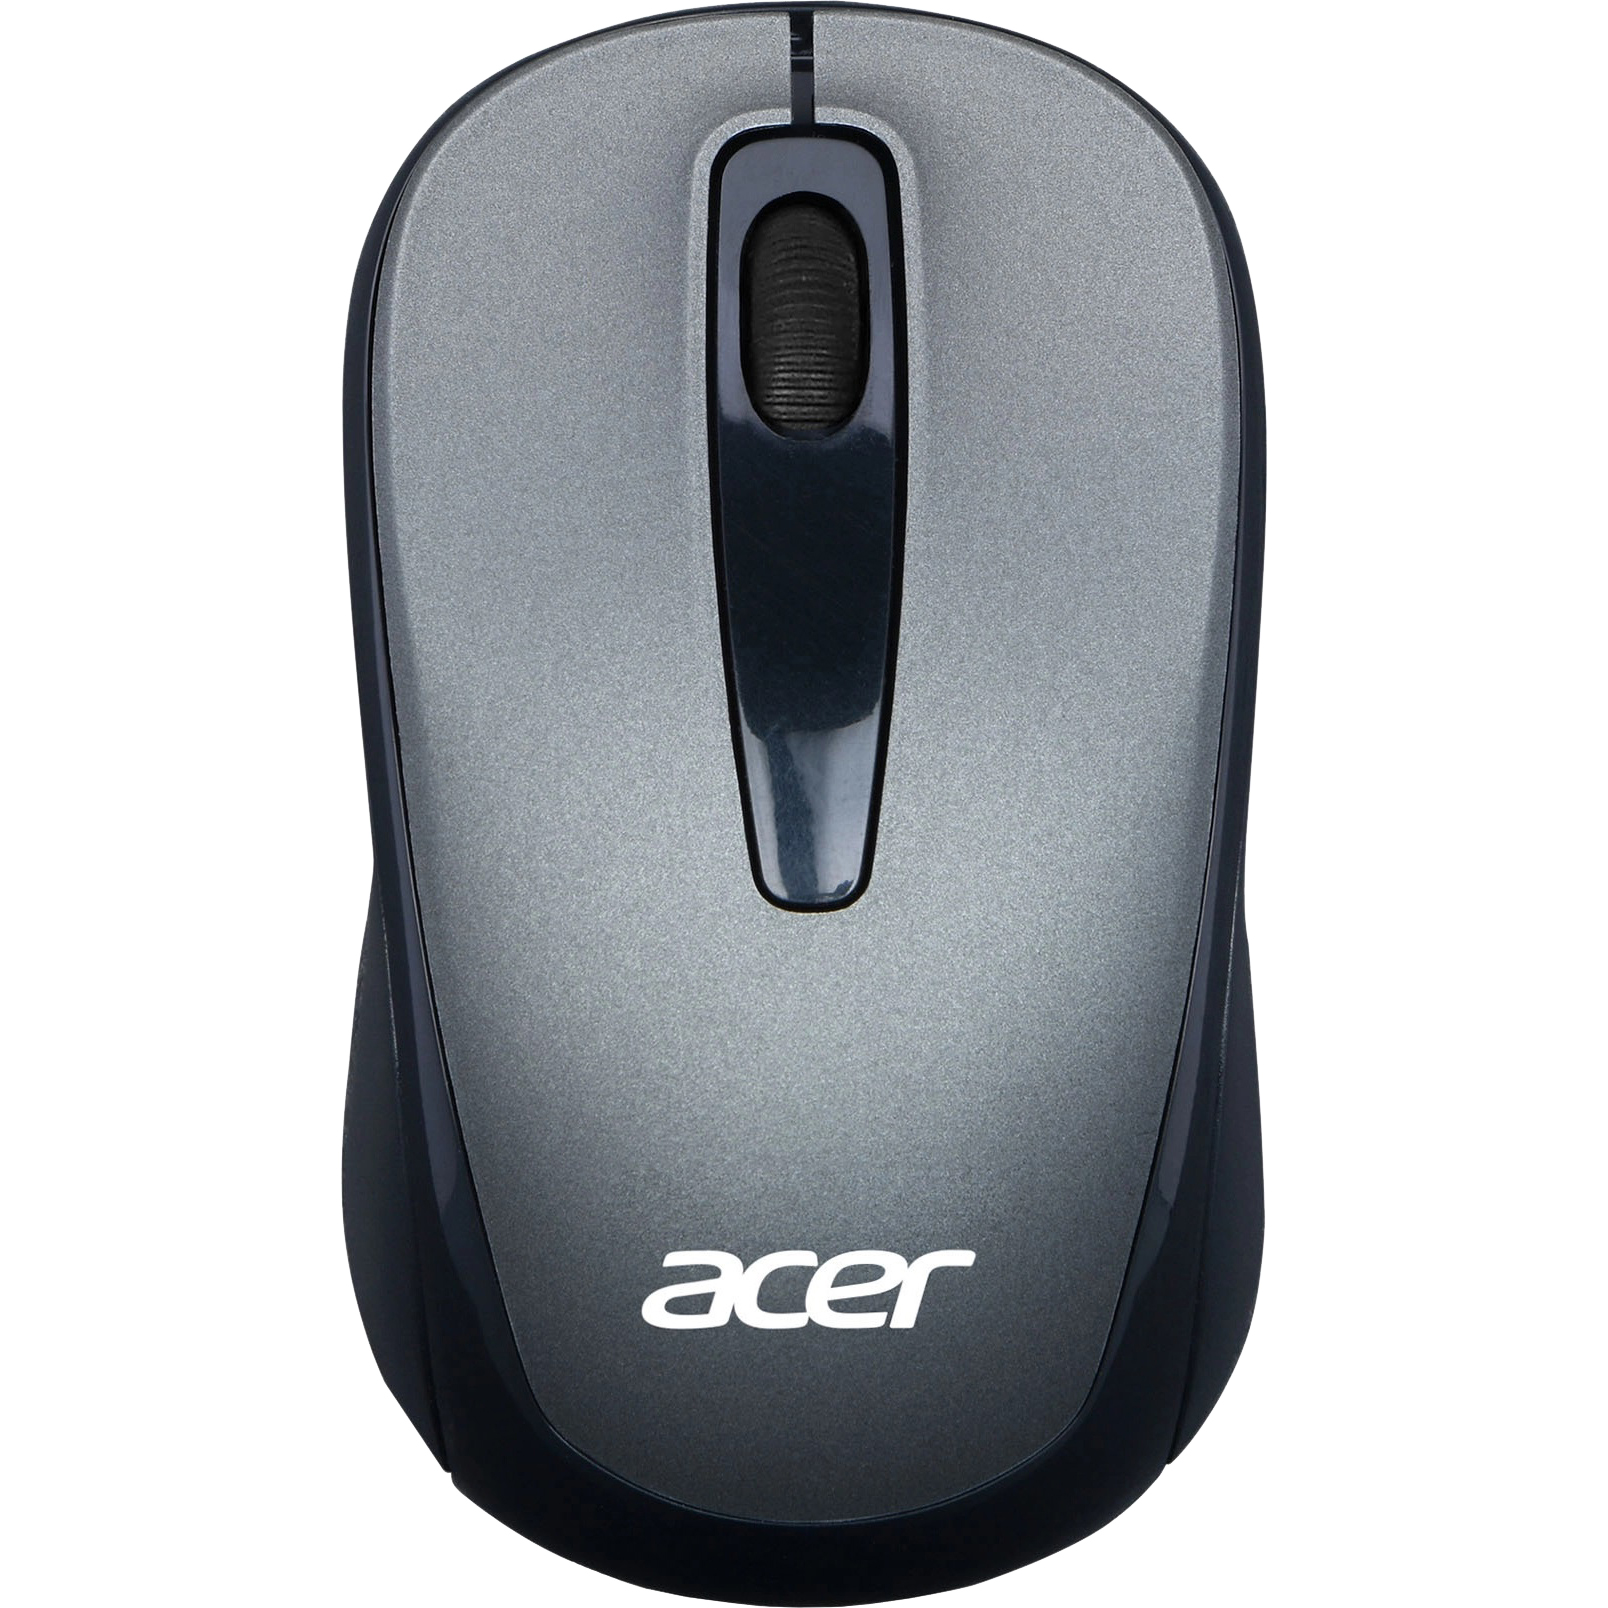 Компьютерная мышь Acer OMR134 серый цена и фото